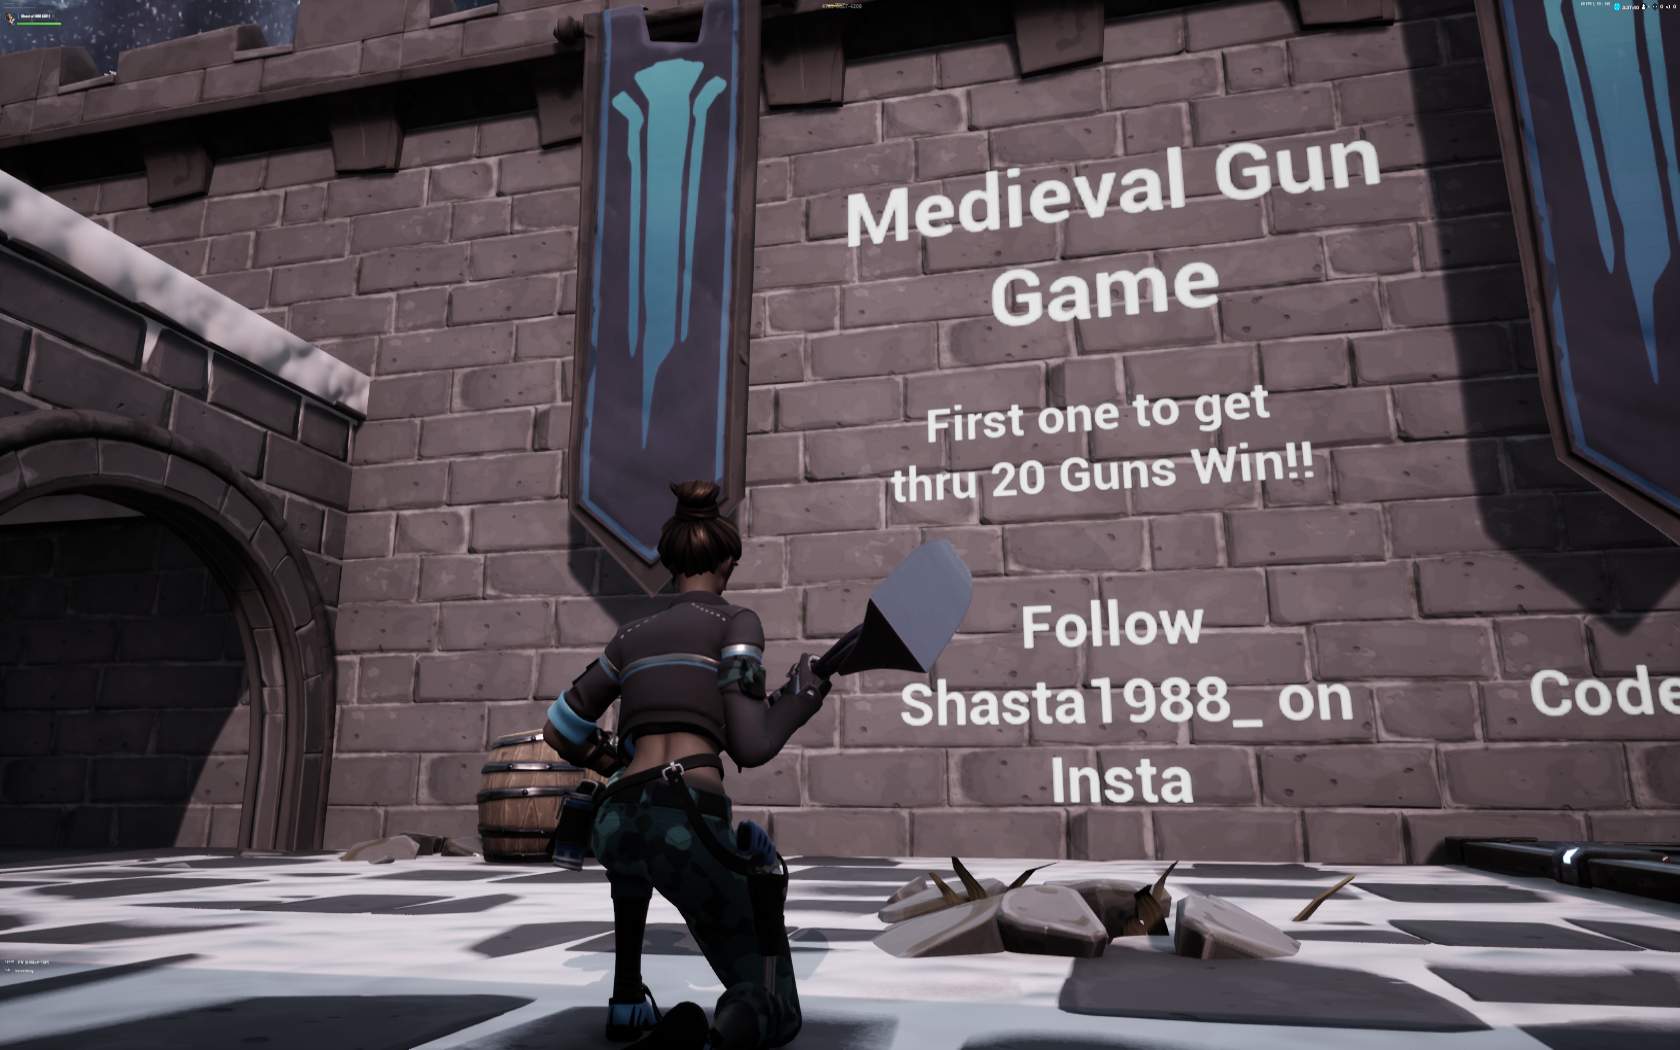 MEDIEVAL GUN GAME